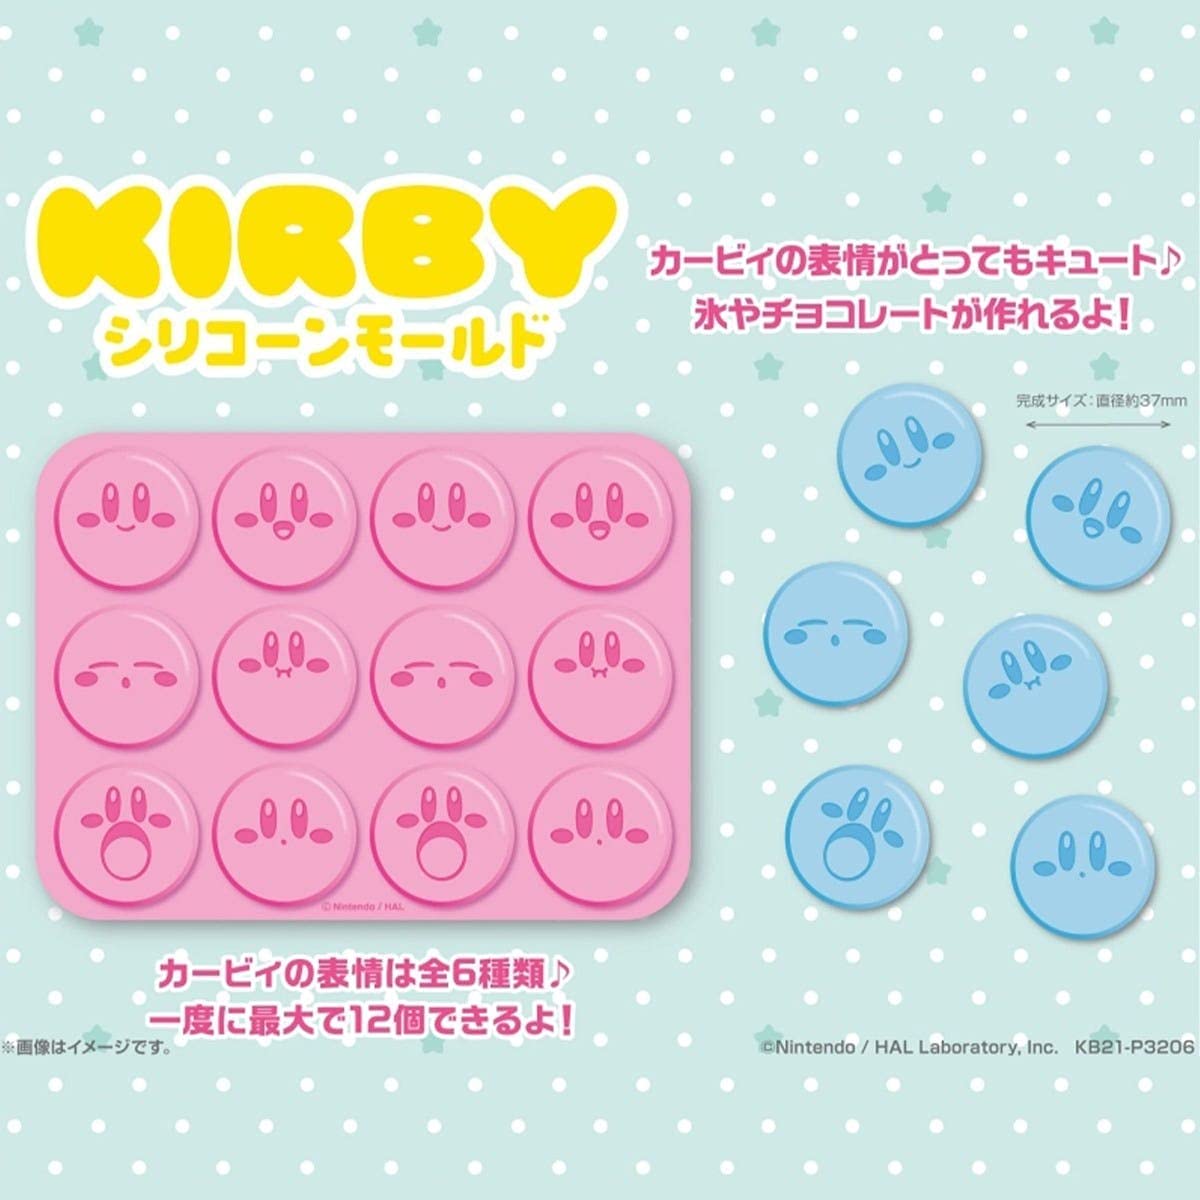 Kirby Silikonform für Eiswürfel